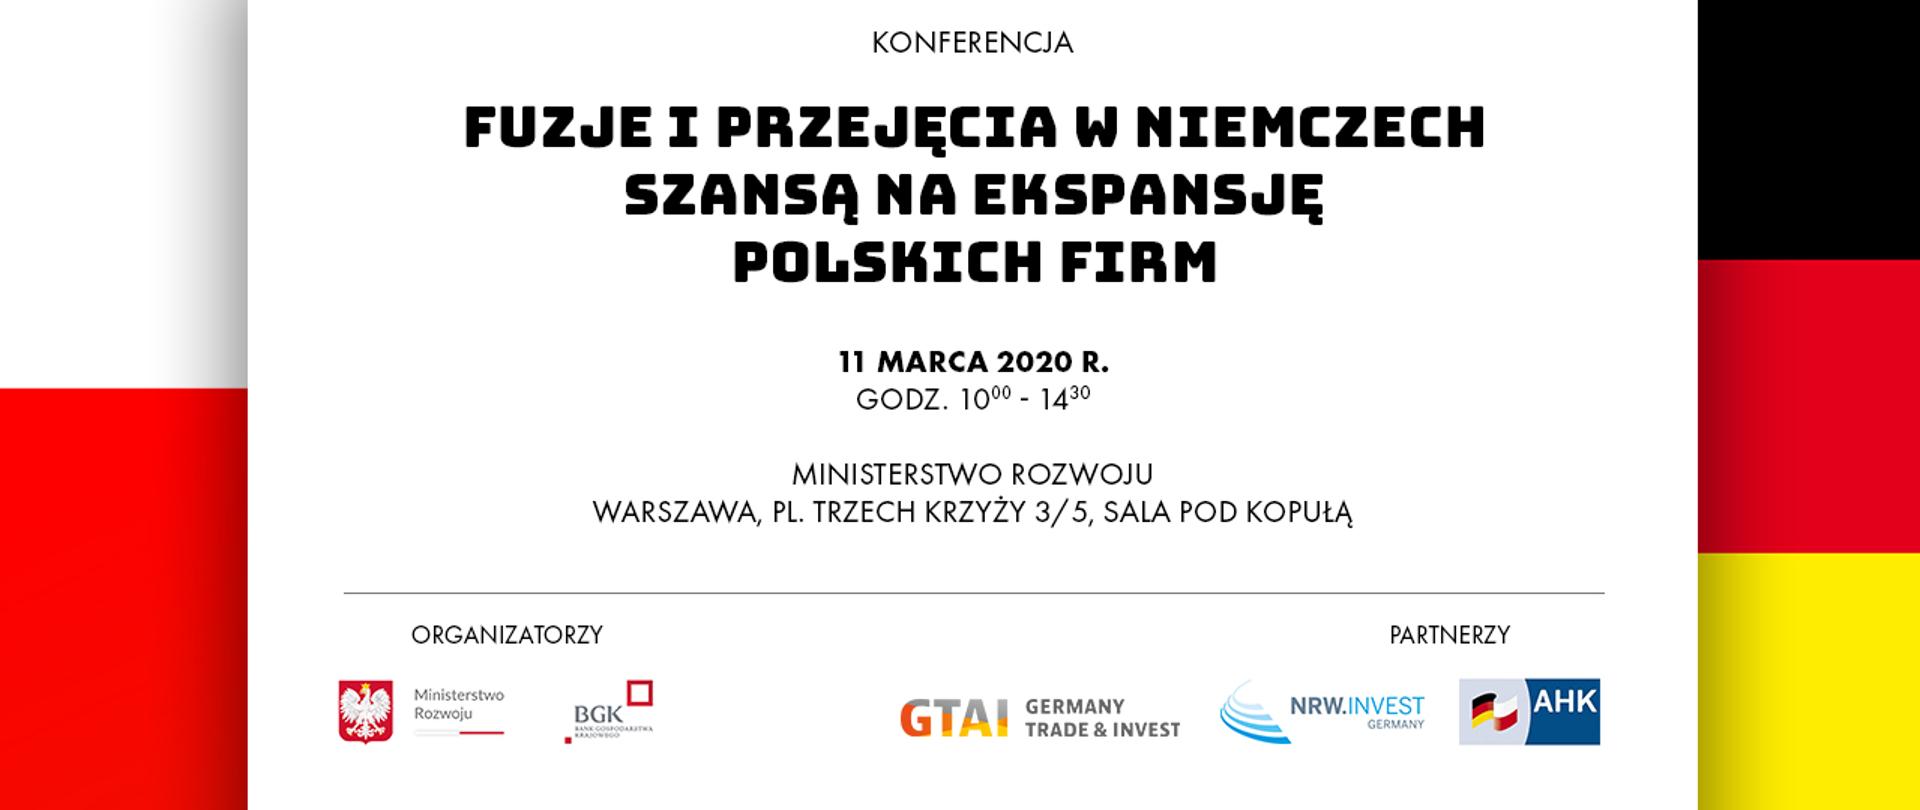 Informacje nt. konferencji, w tle flagi: polska i niemiecka.